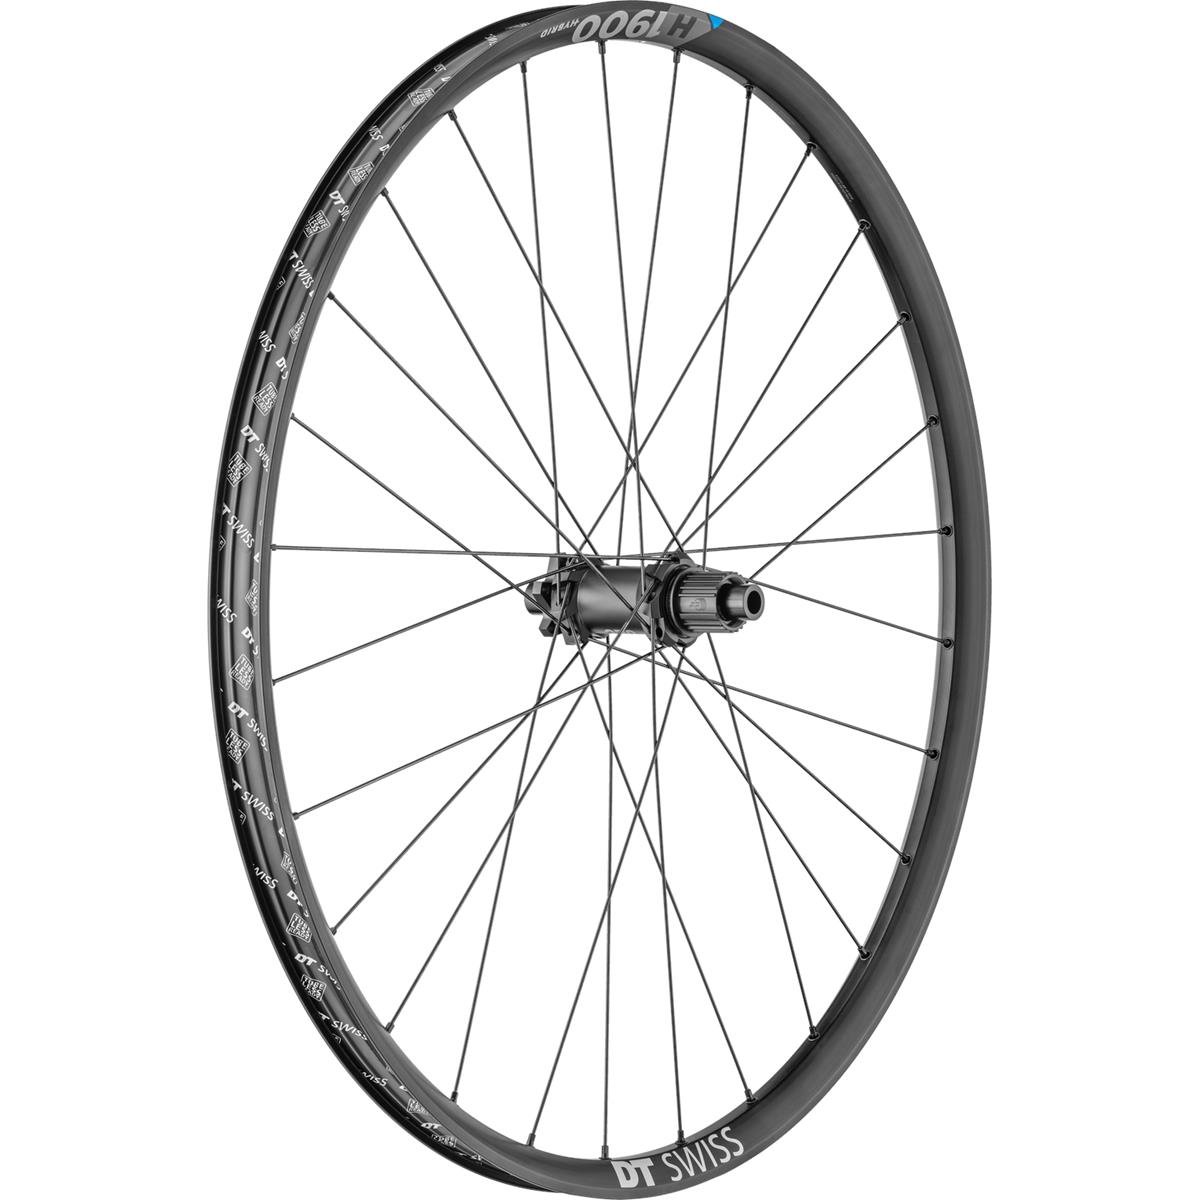 DT Swiss Wheel H 1900 Spline Rear, 27.5 Inches, Aluminum, 12x148 mm TA Boost, IS 6-Bolt, Shim 12, 30 mm